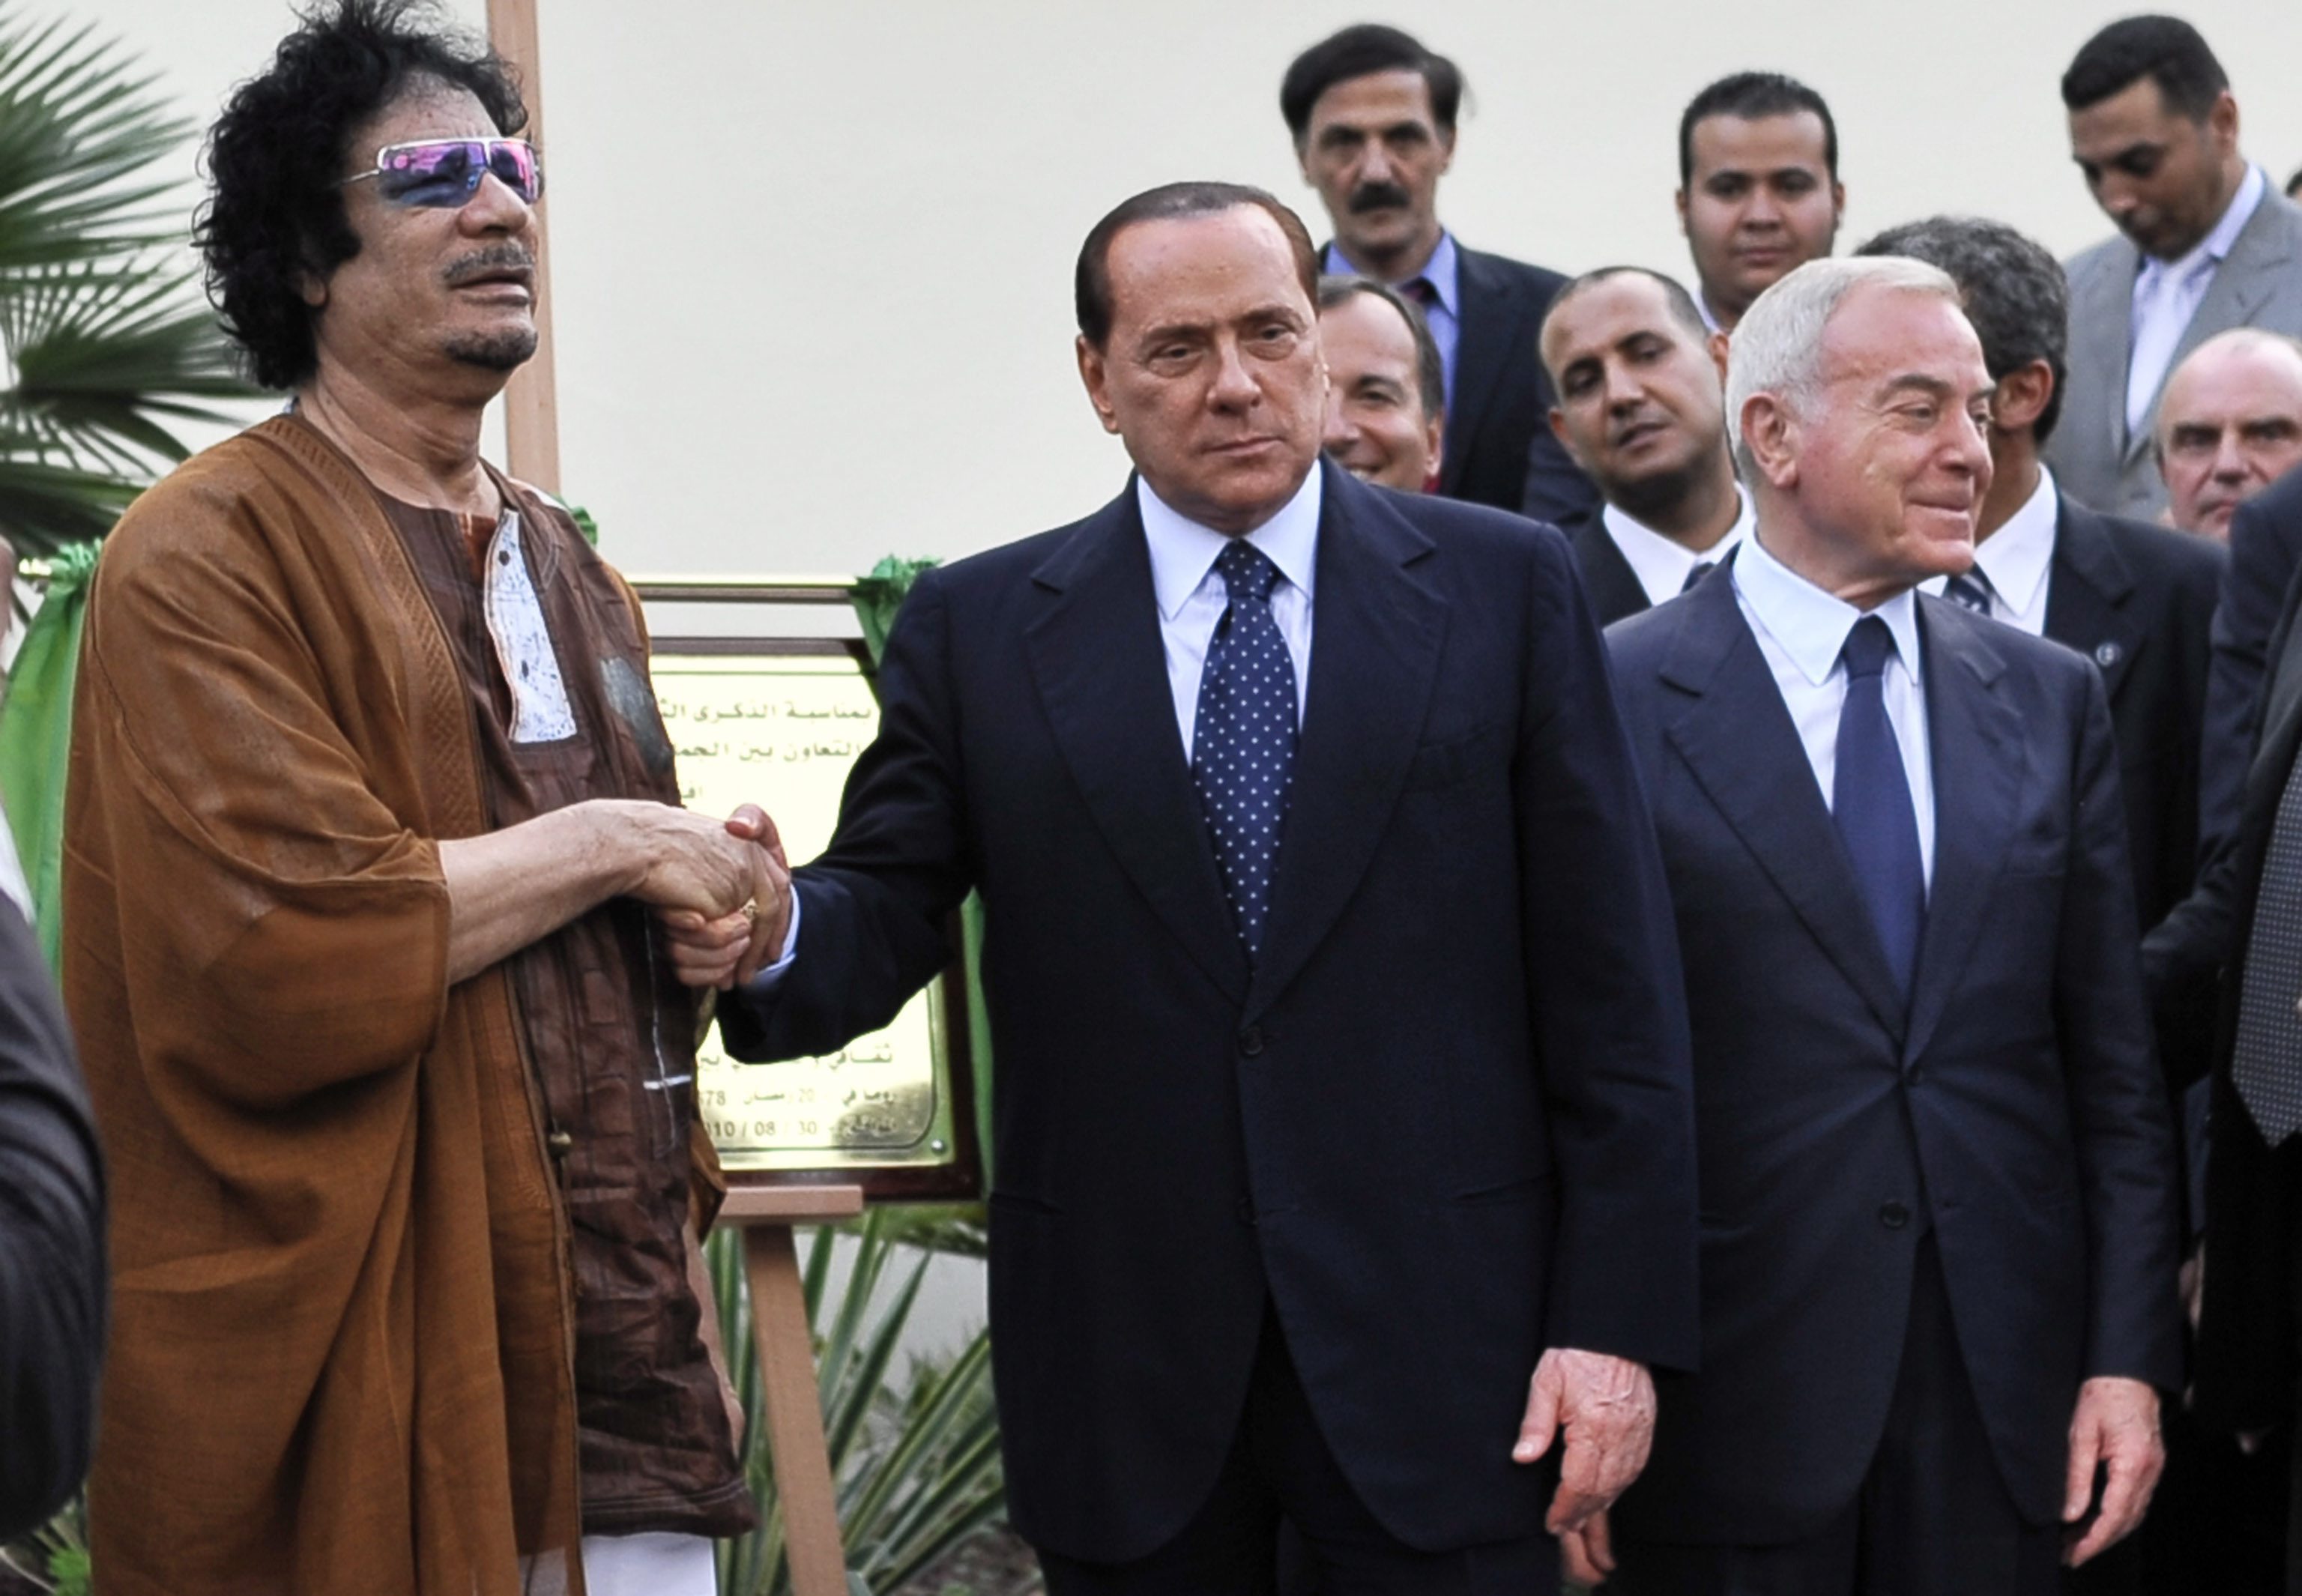 <b>Ιταλία-Λιβύη</b>Στενότερες οικονομικές σχέσεις μεταξύ των δύο χωρών